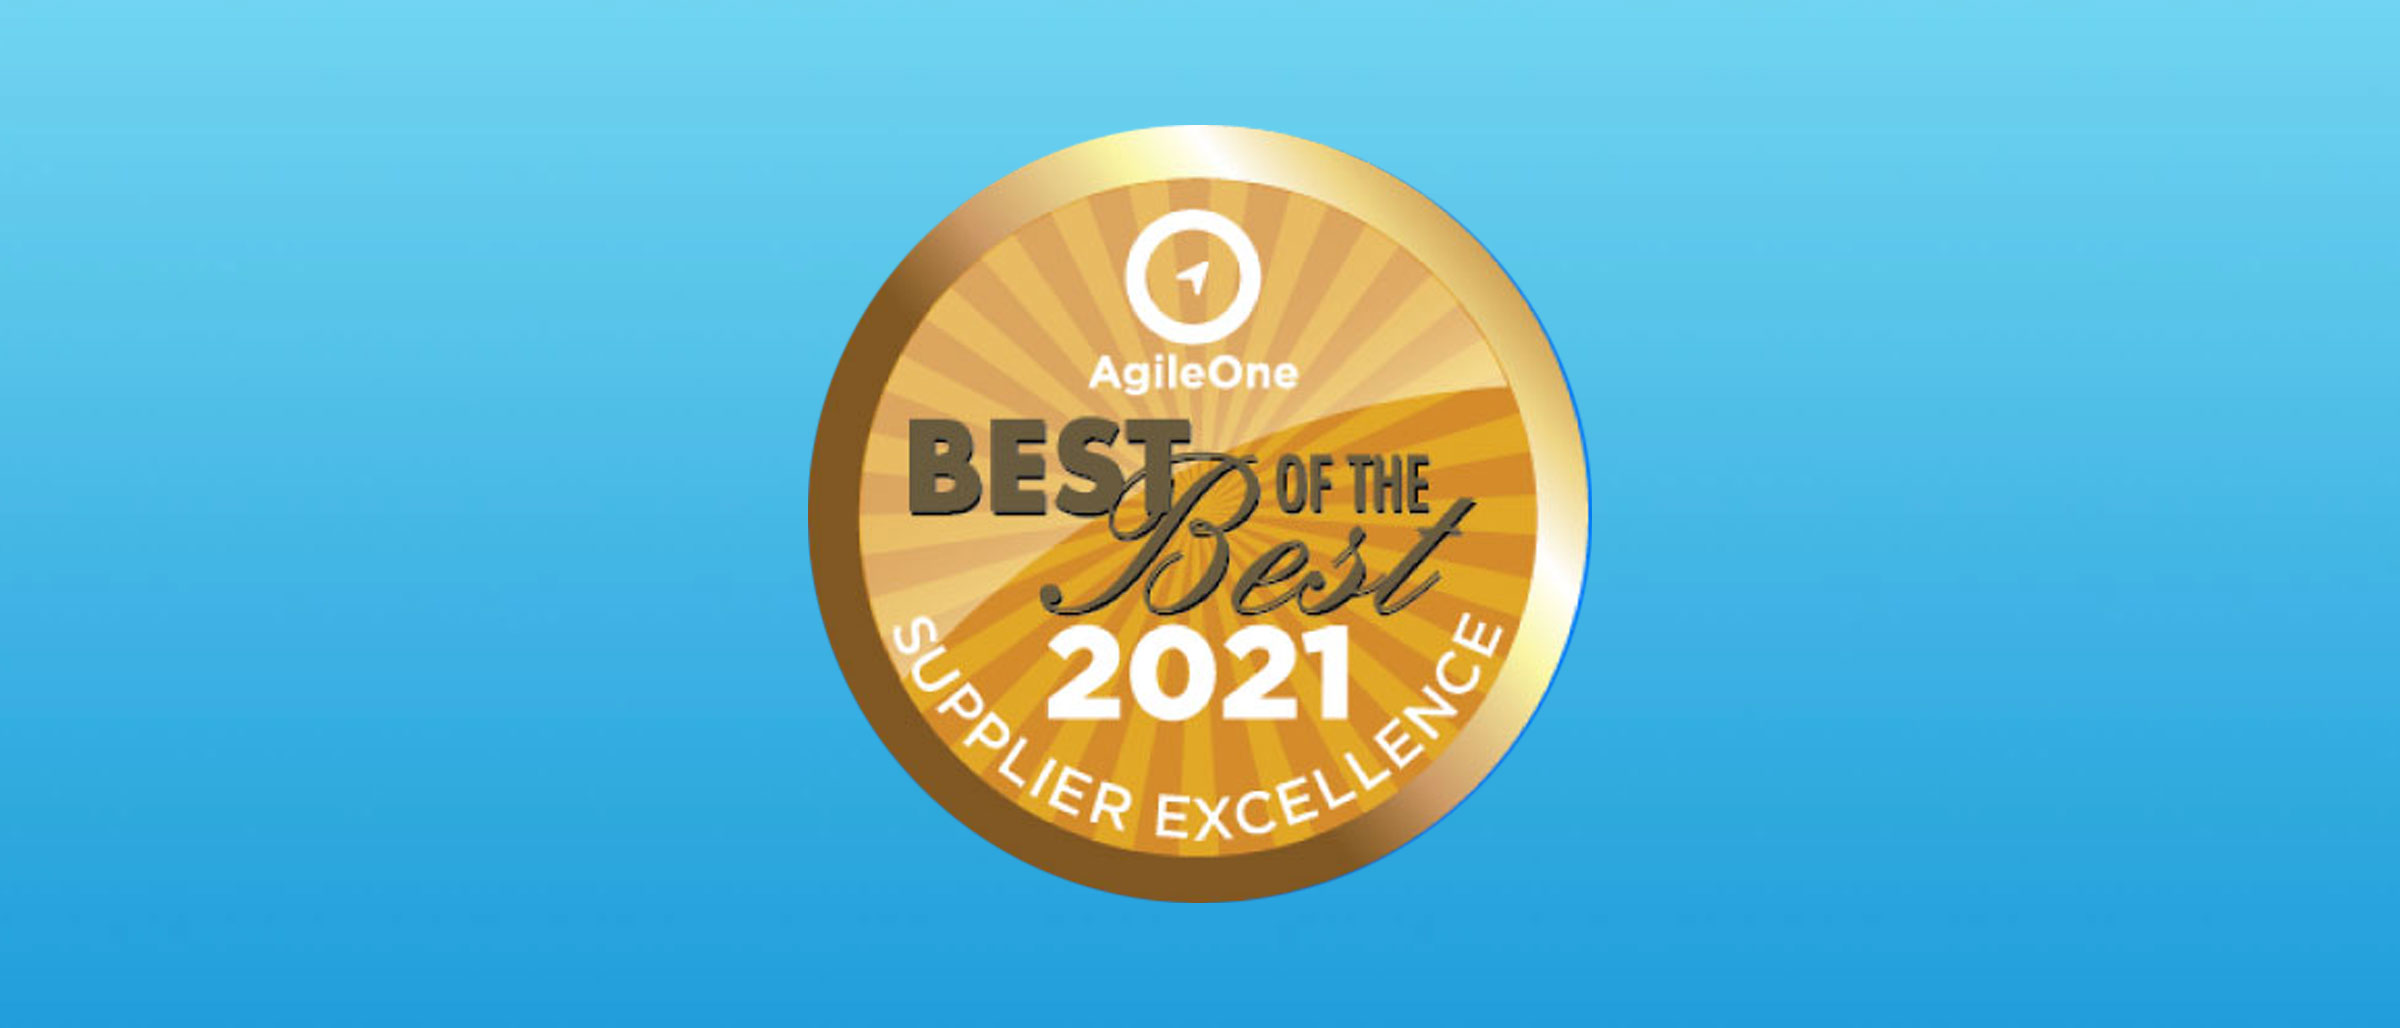 AgileOne Gold Award 2021